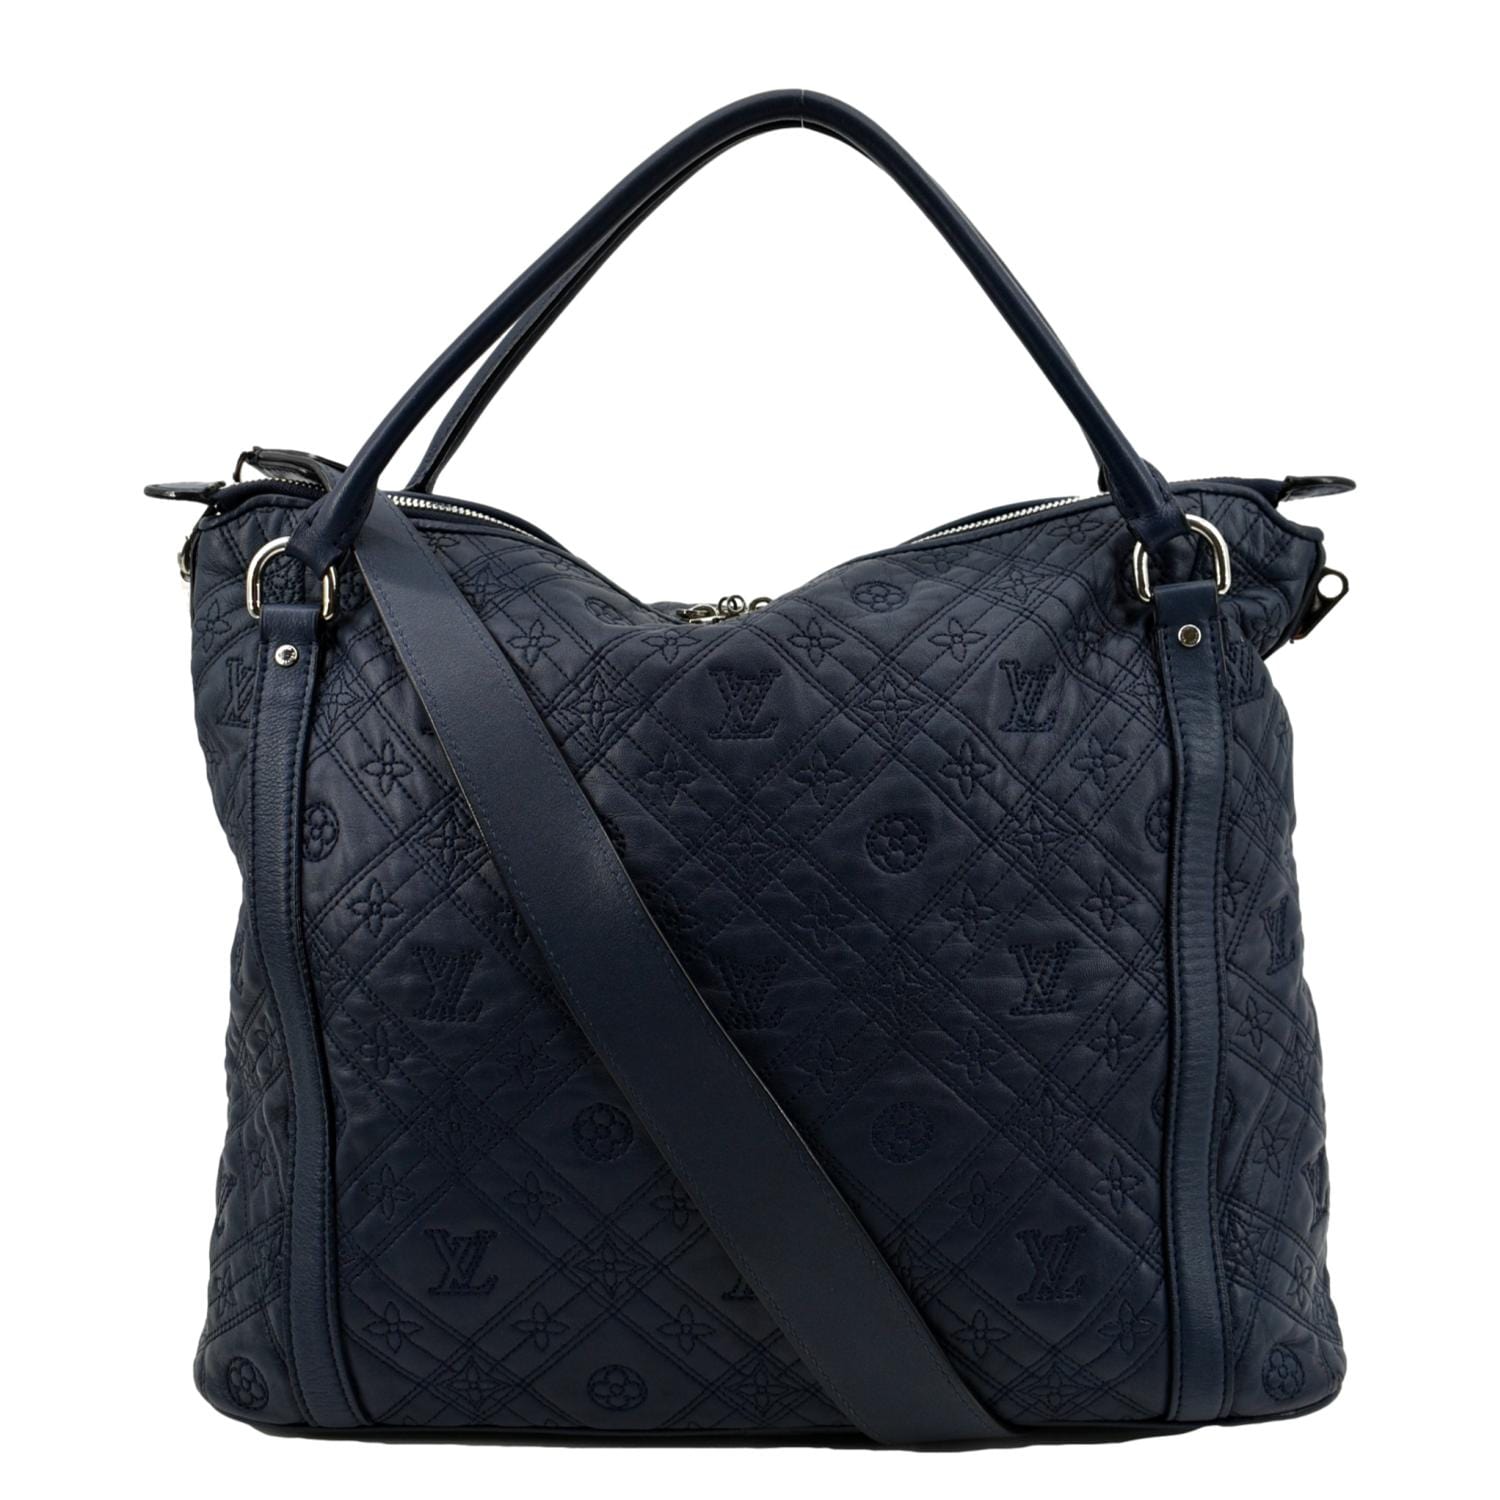 Louis Vuitton Ixia Handbag 365670